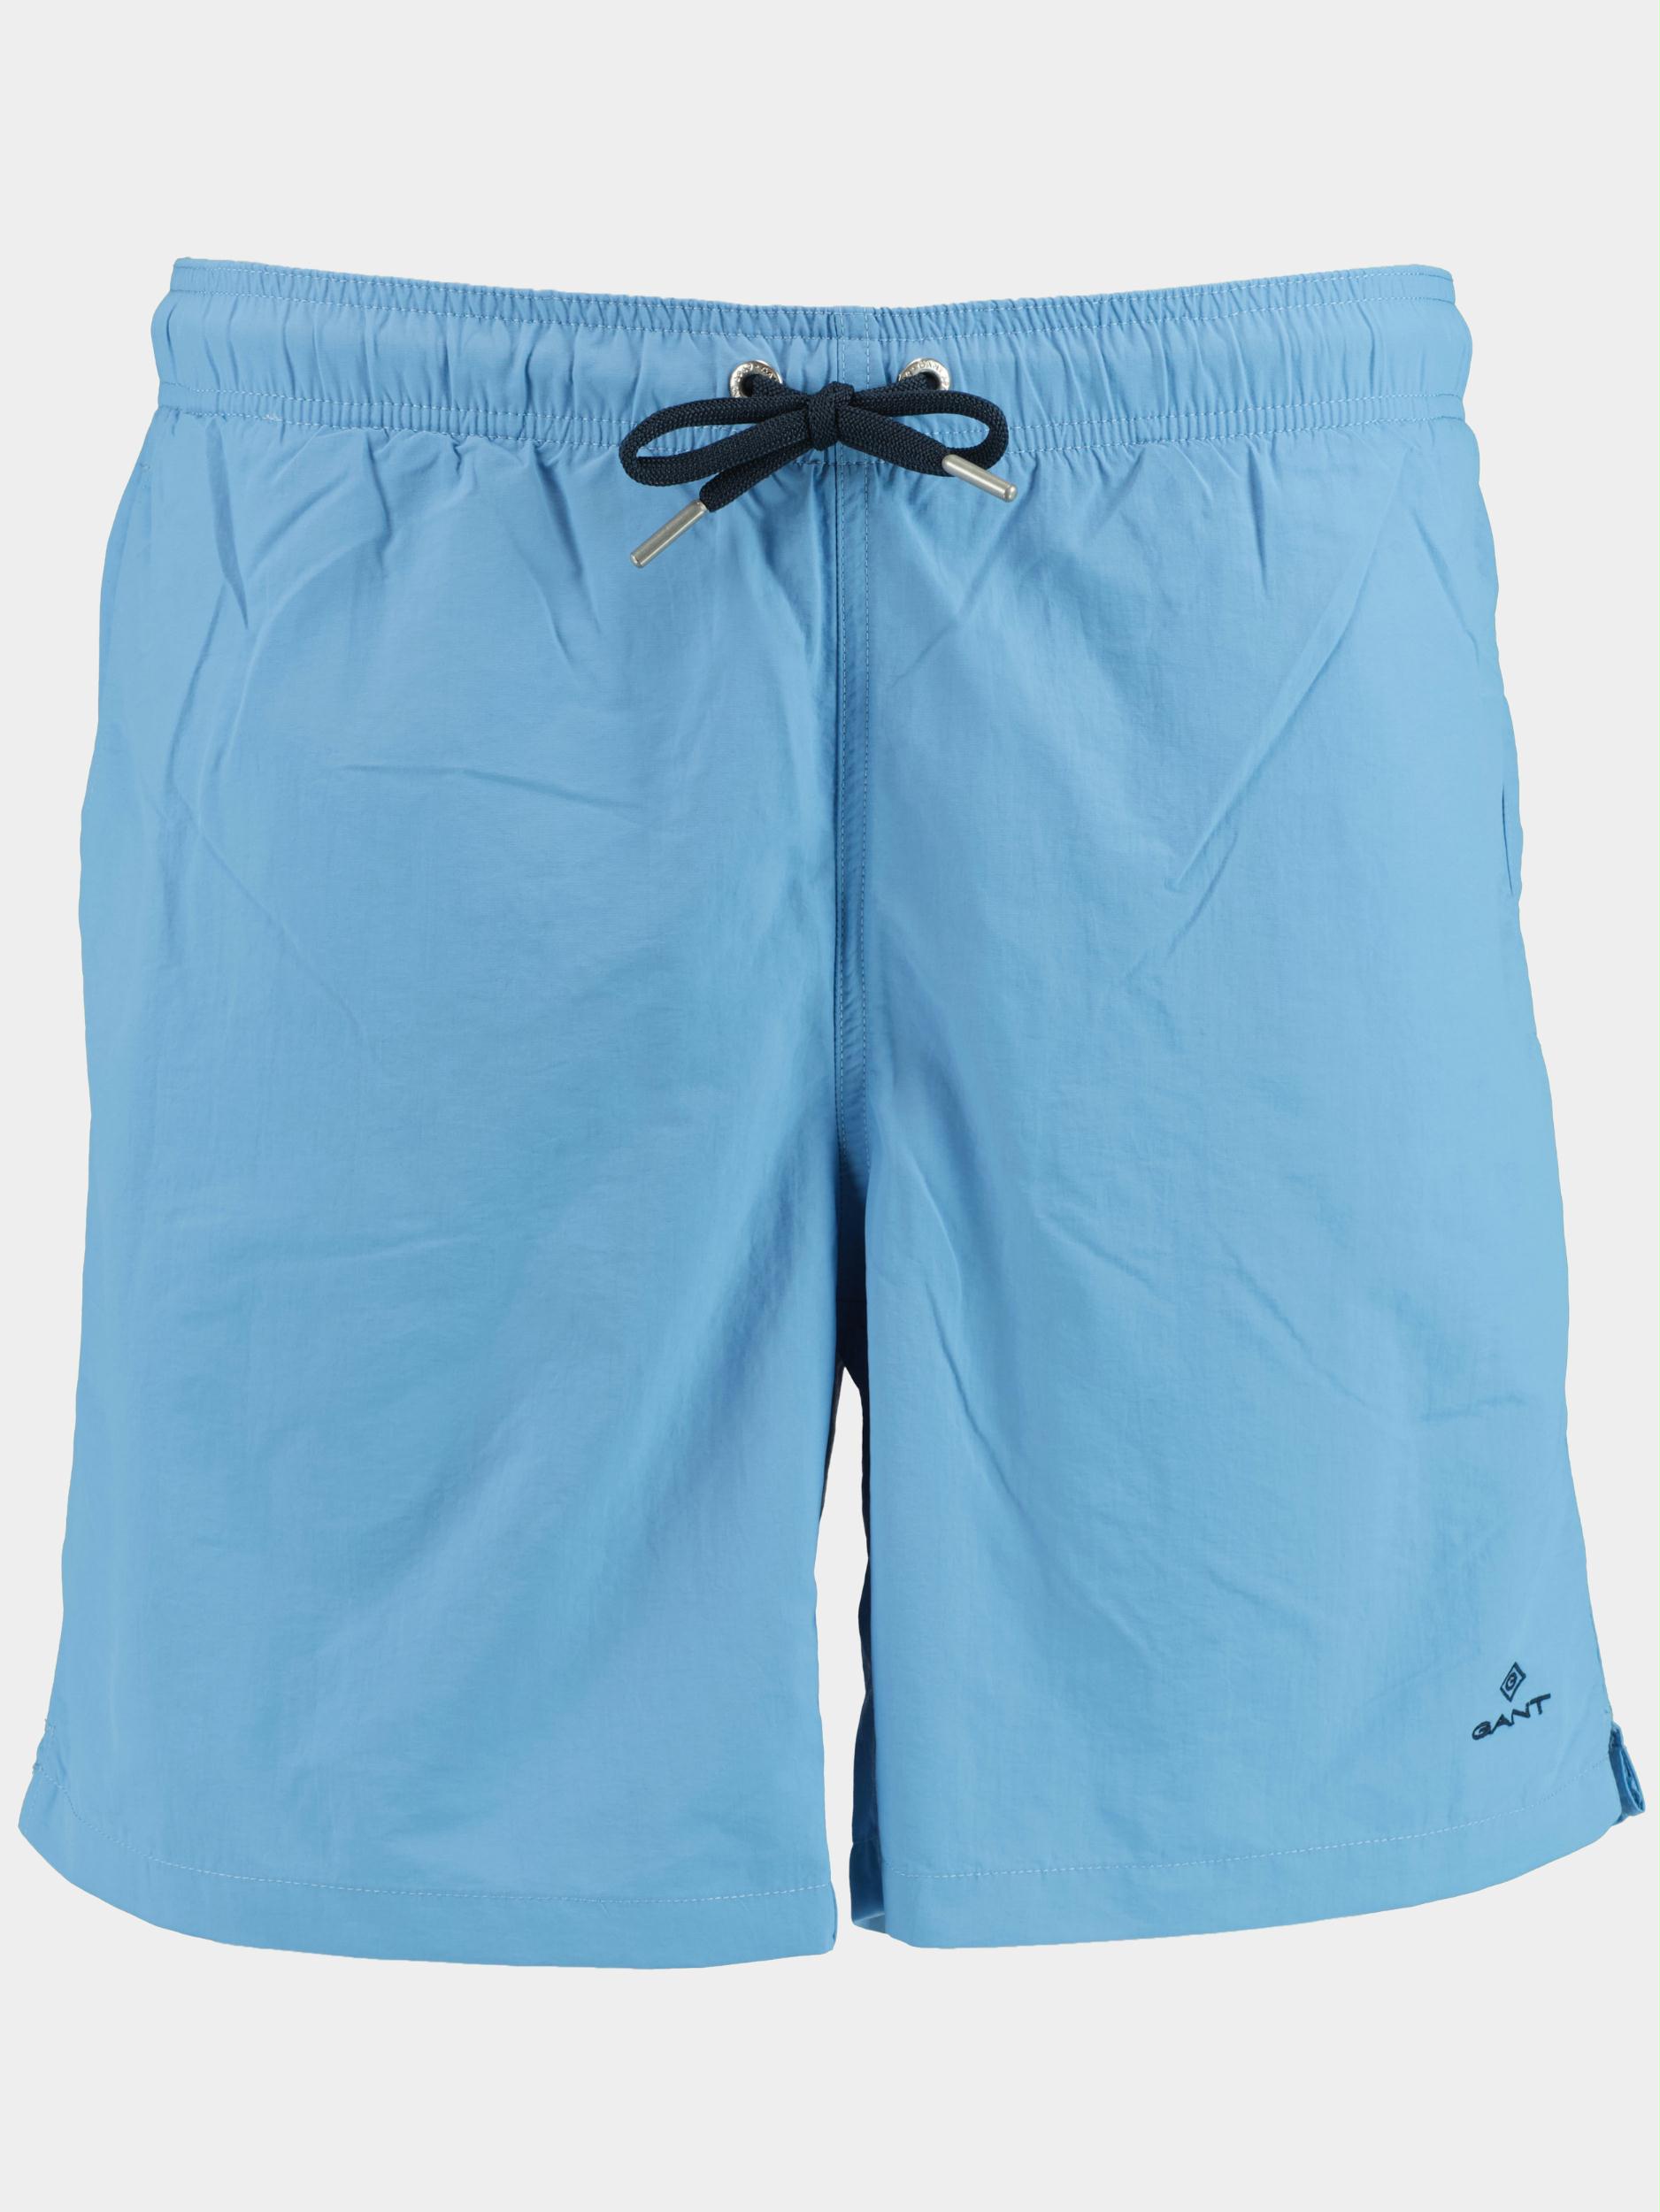 Gant Zwembroek Blauw LC Swim Shorts 922016002/469